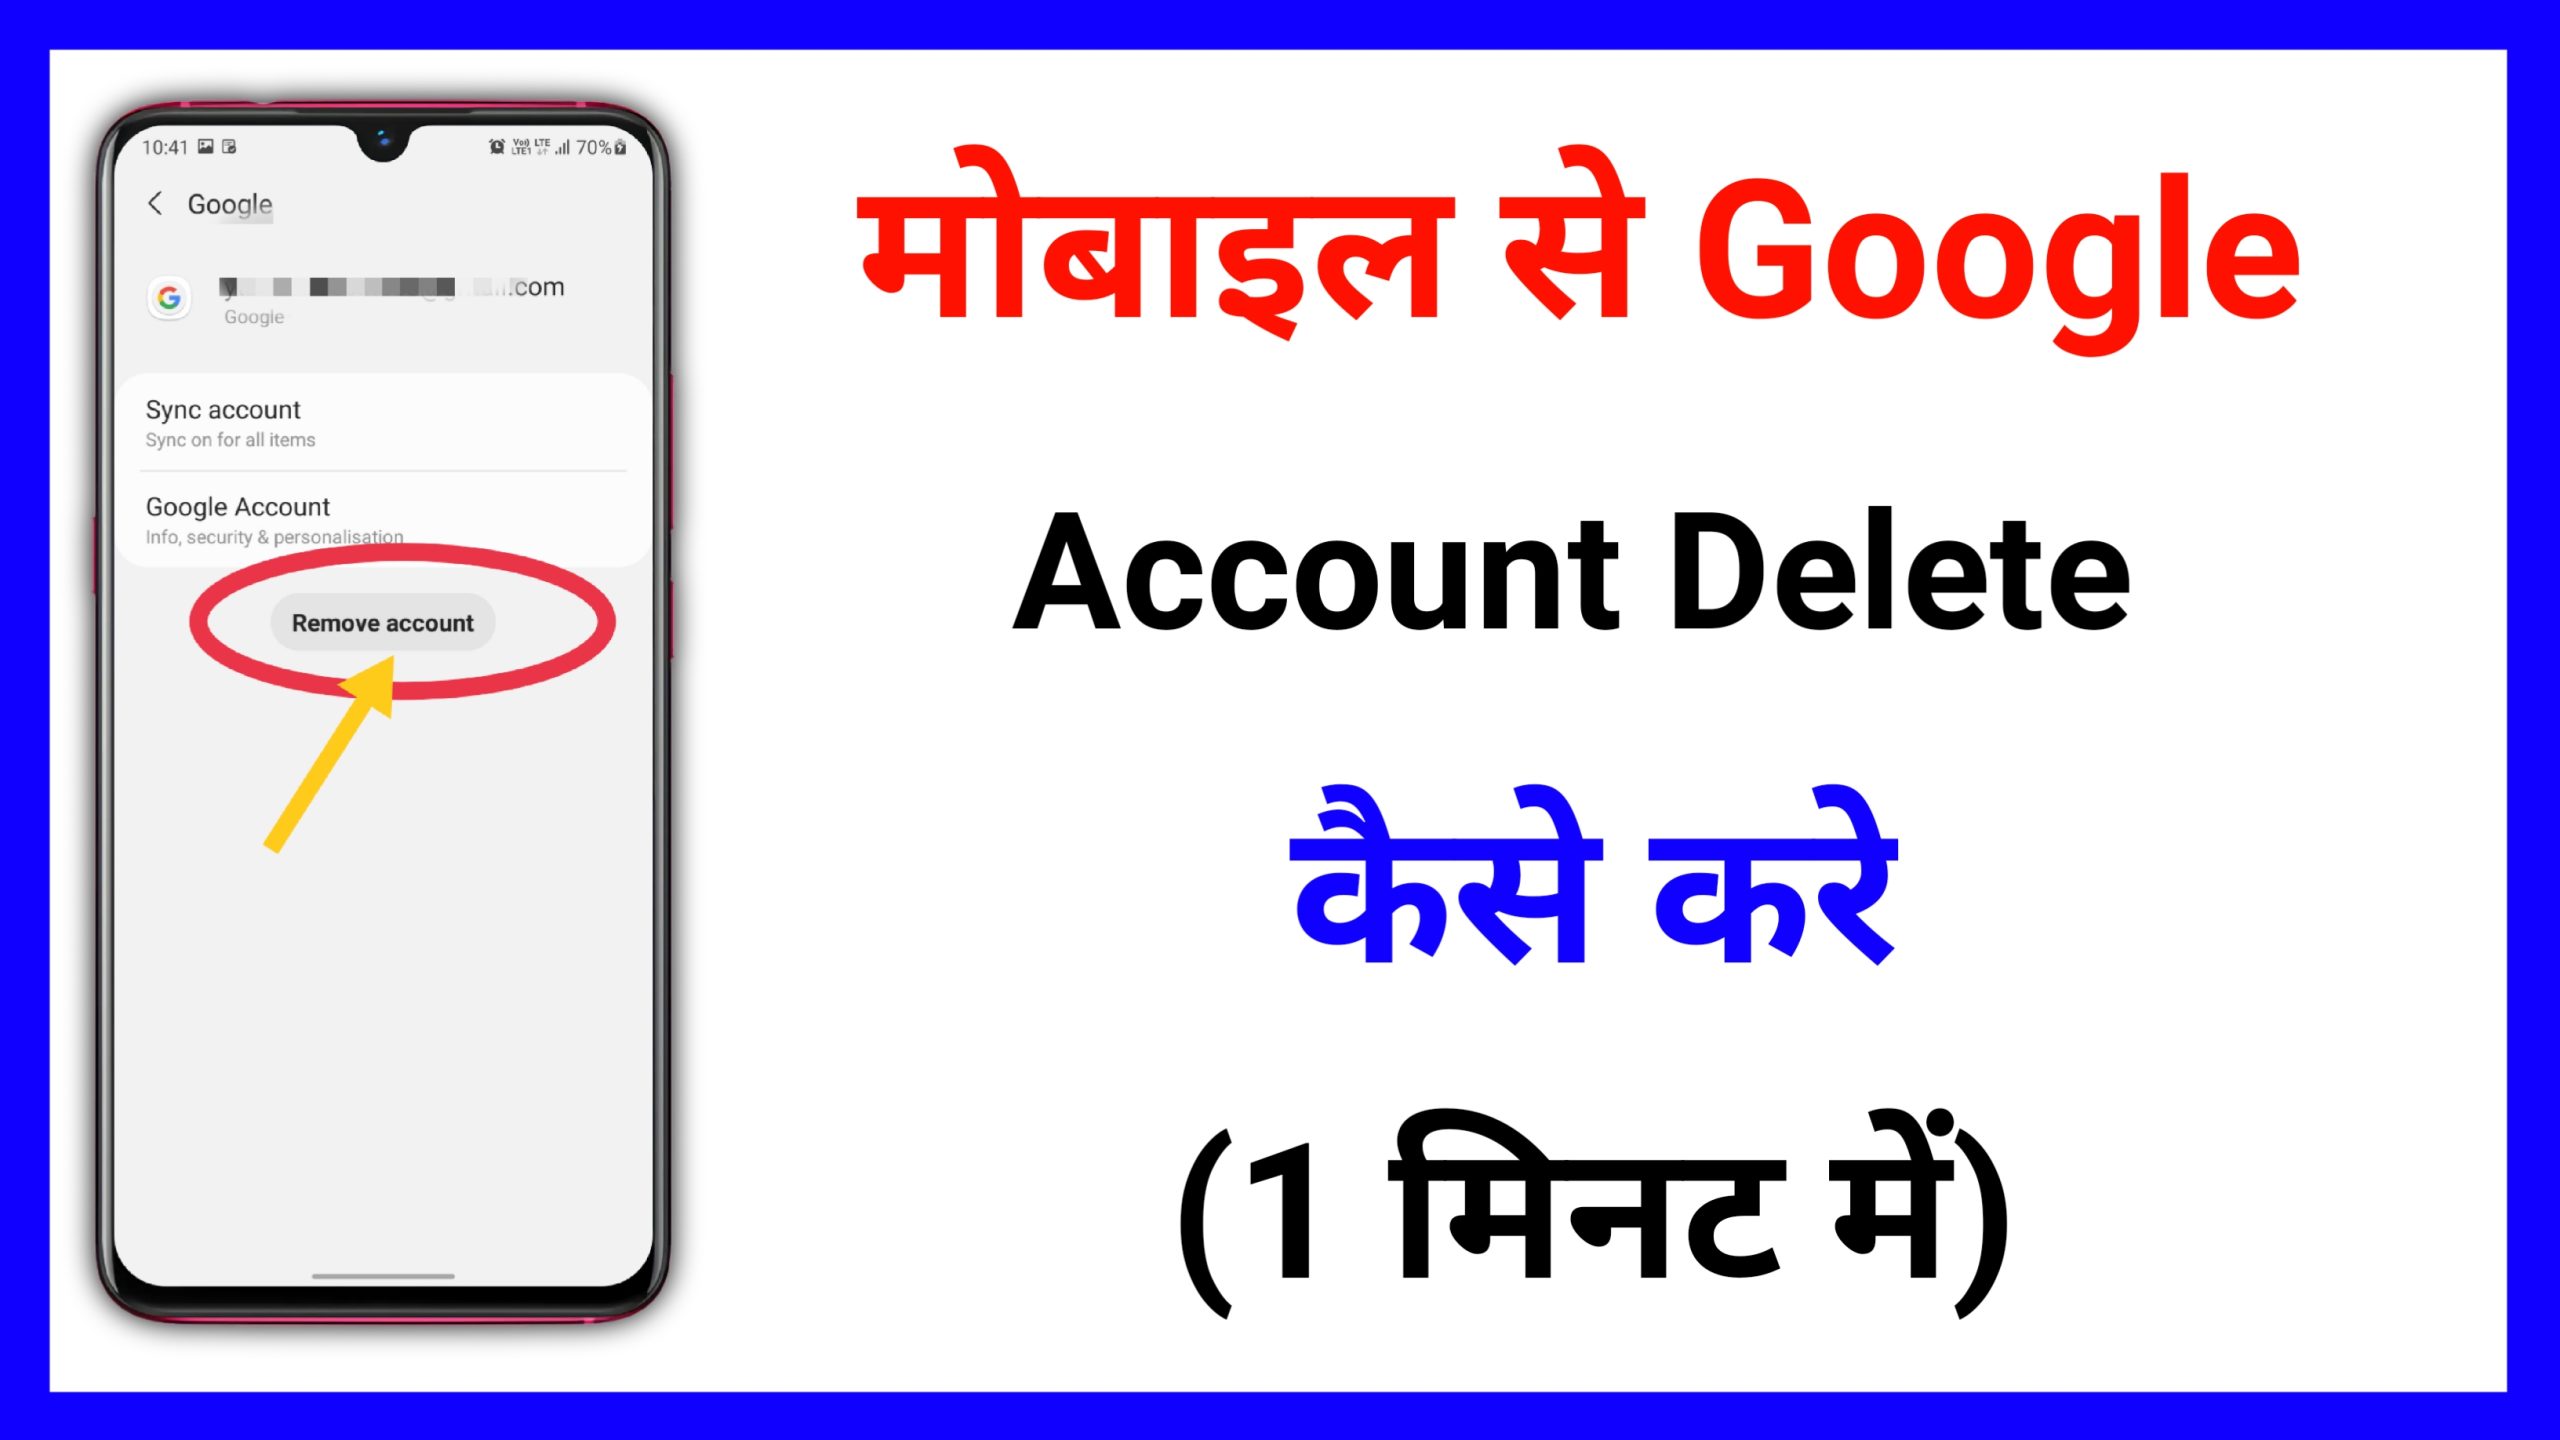 how to Delete Google Account